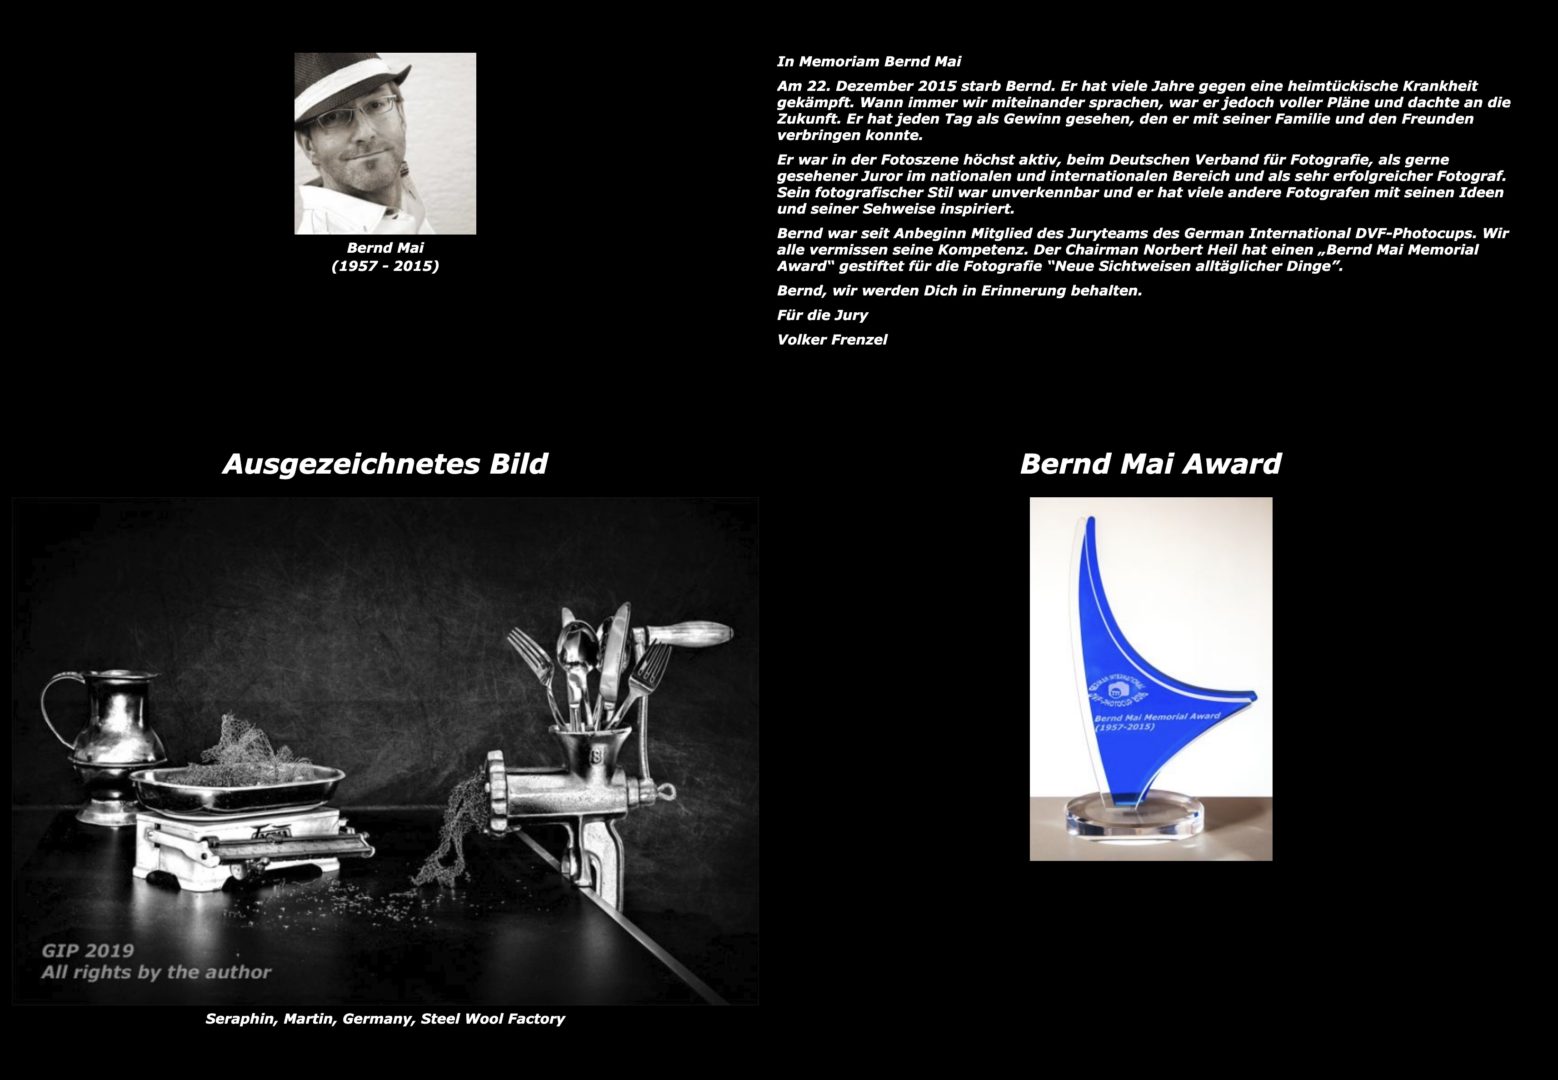 Bernd Mai Award - Martin Seraphin - DVF